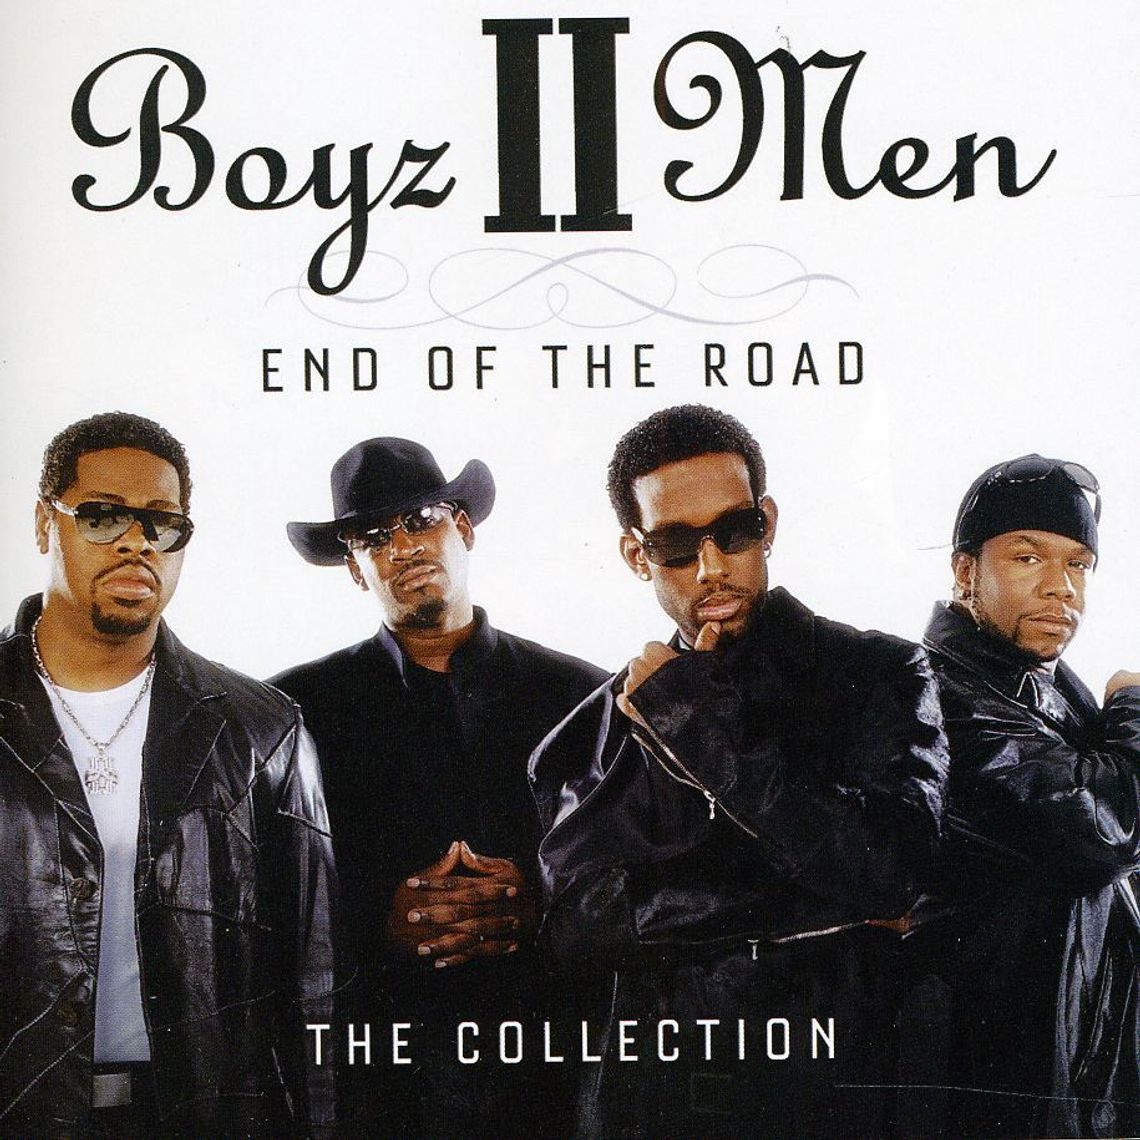 Boyz II Men "End of the road"